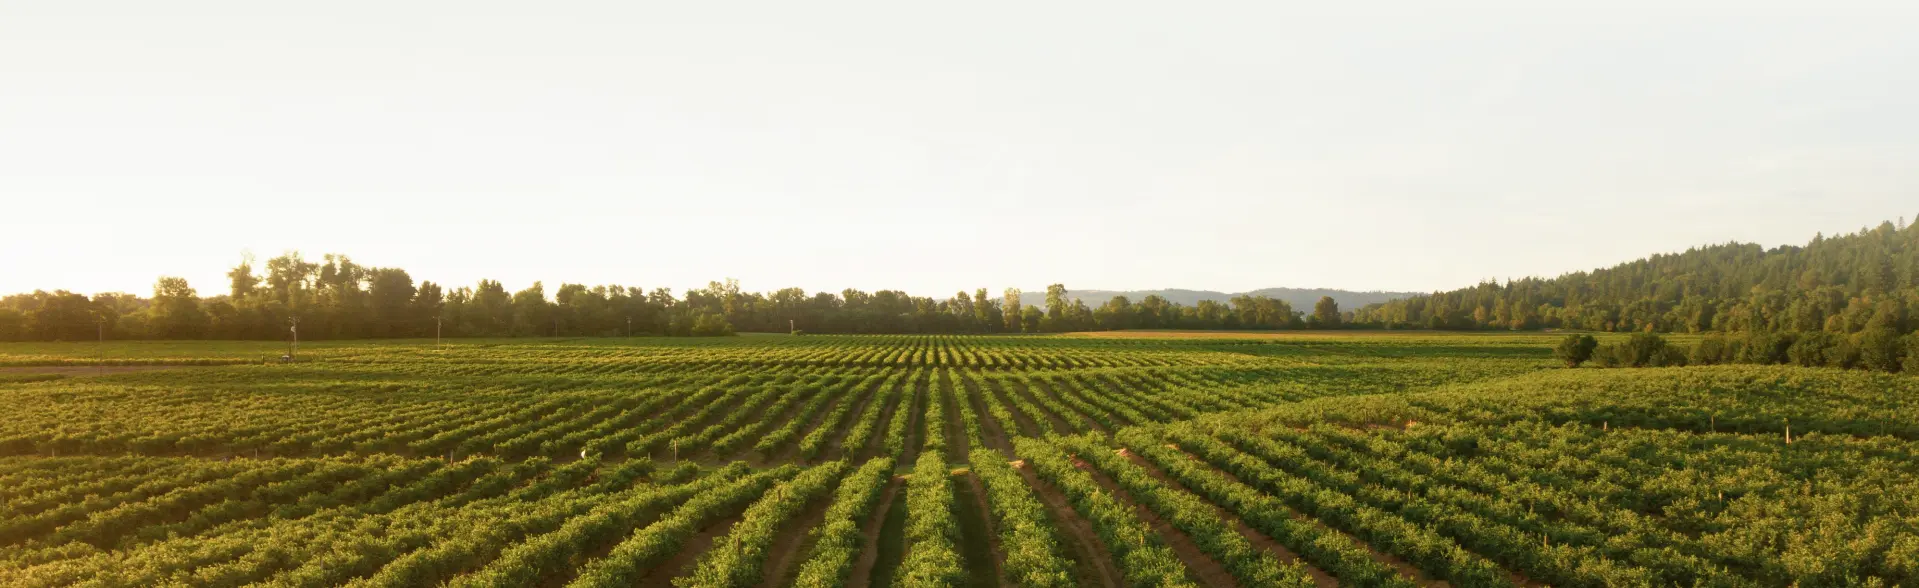 Vineyard Landscape Background